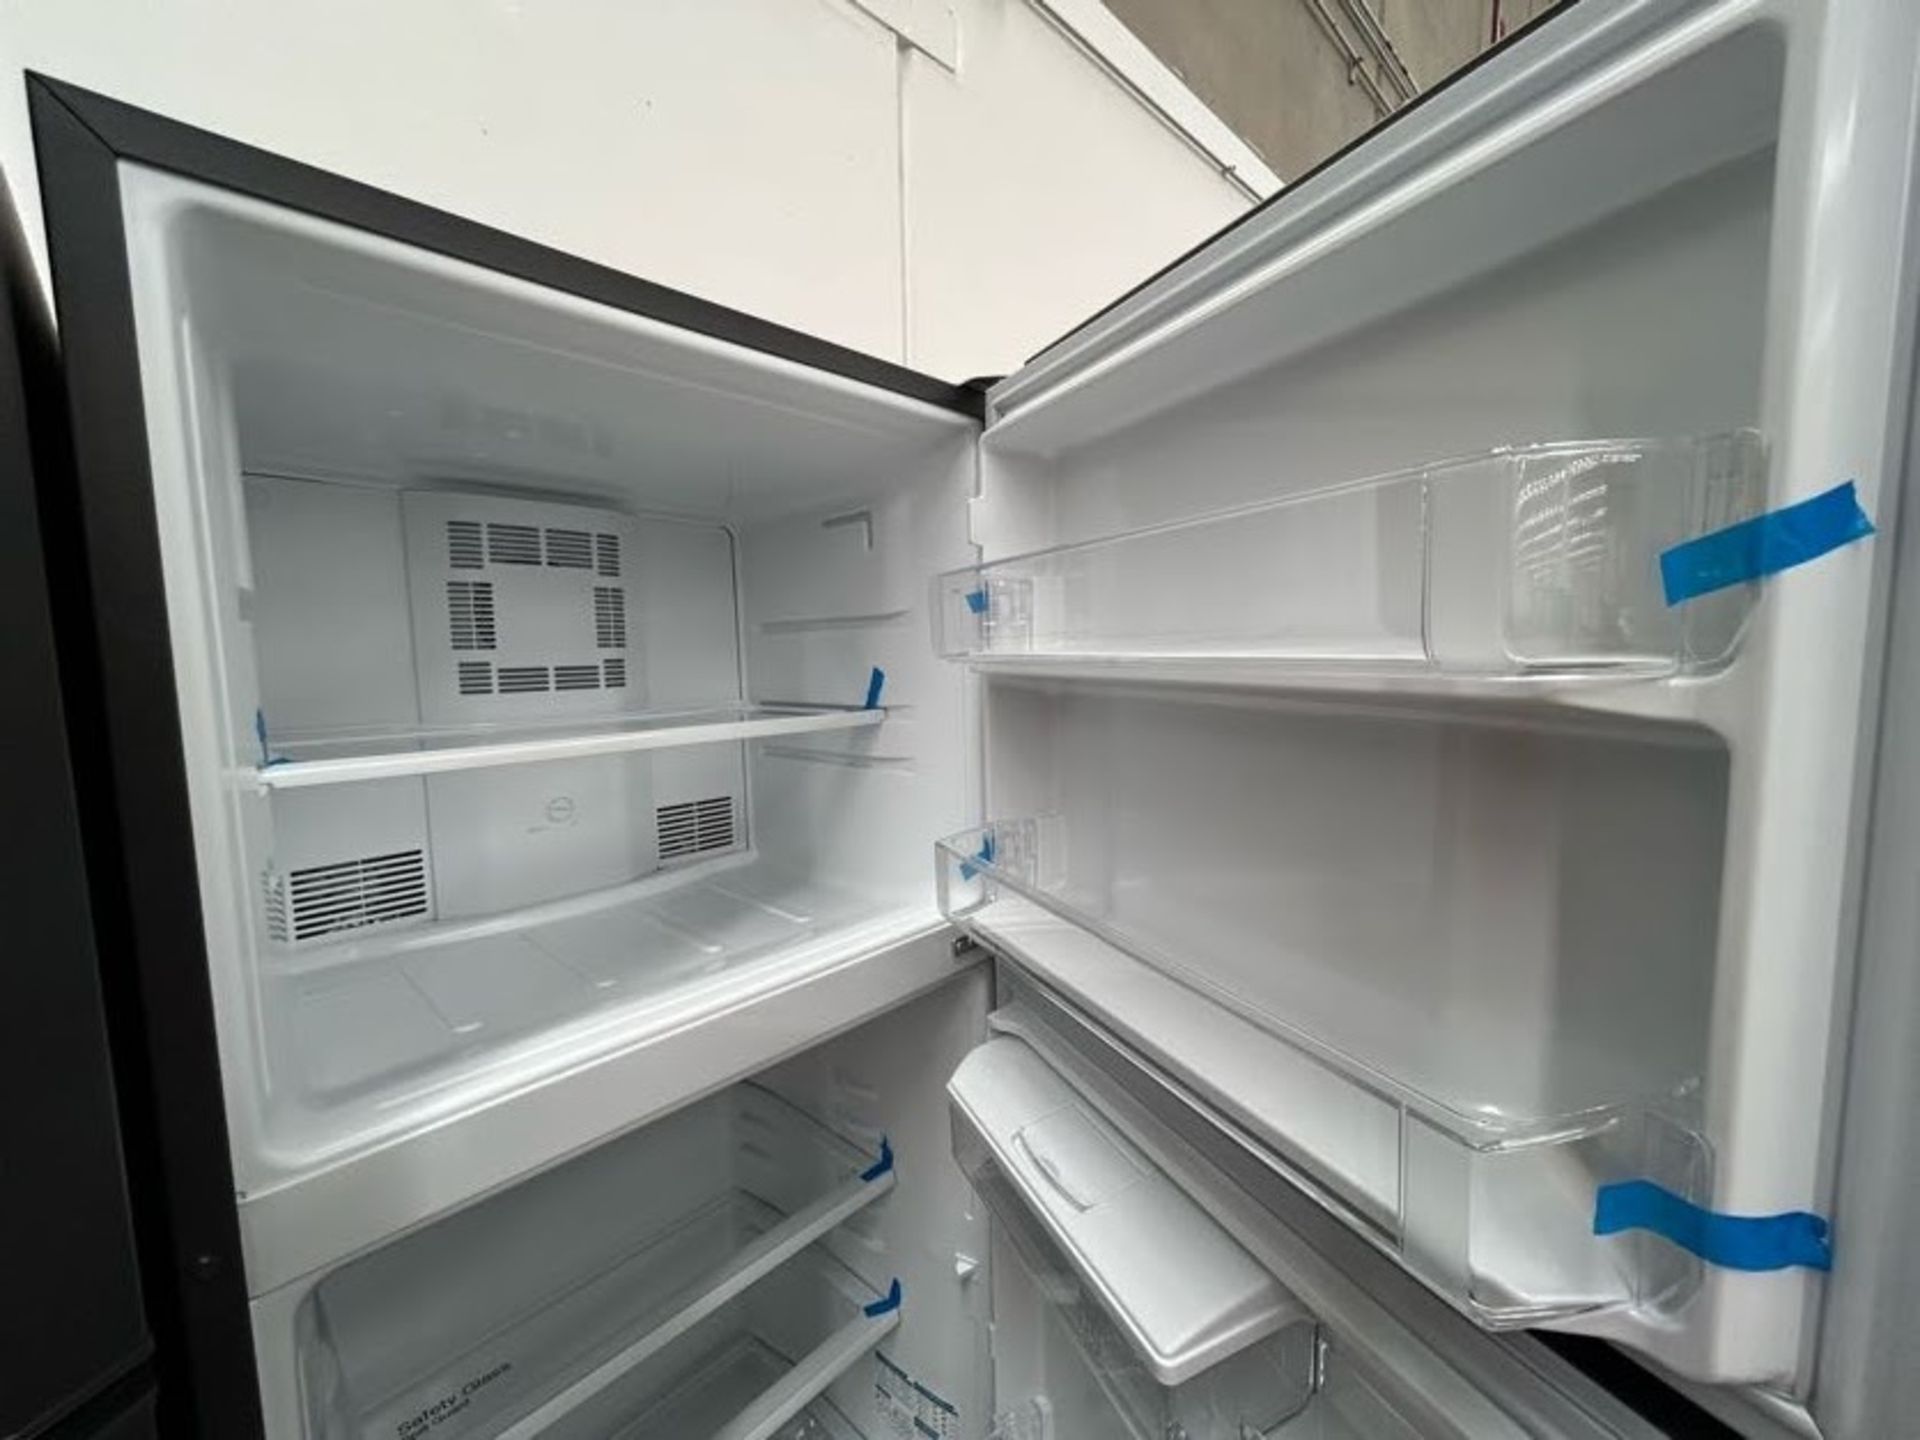 Lote de 2 Refrigeradores contiene: 1 Refrigerador con dispensador de agua Marca MABE, Modelo RME360 - Image 4 of 8